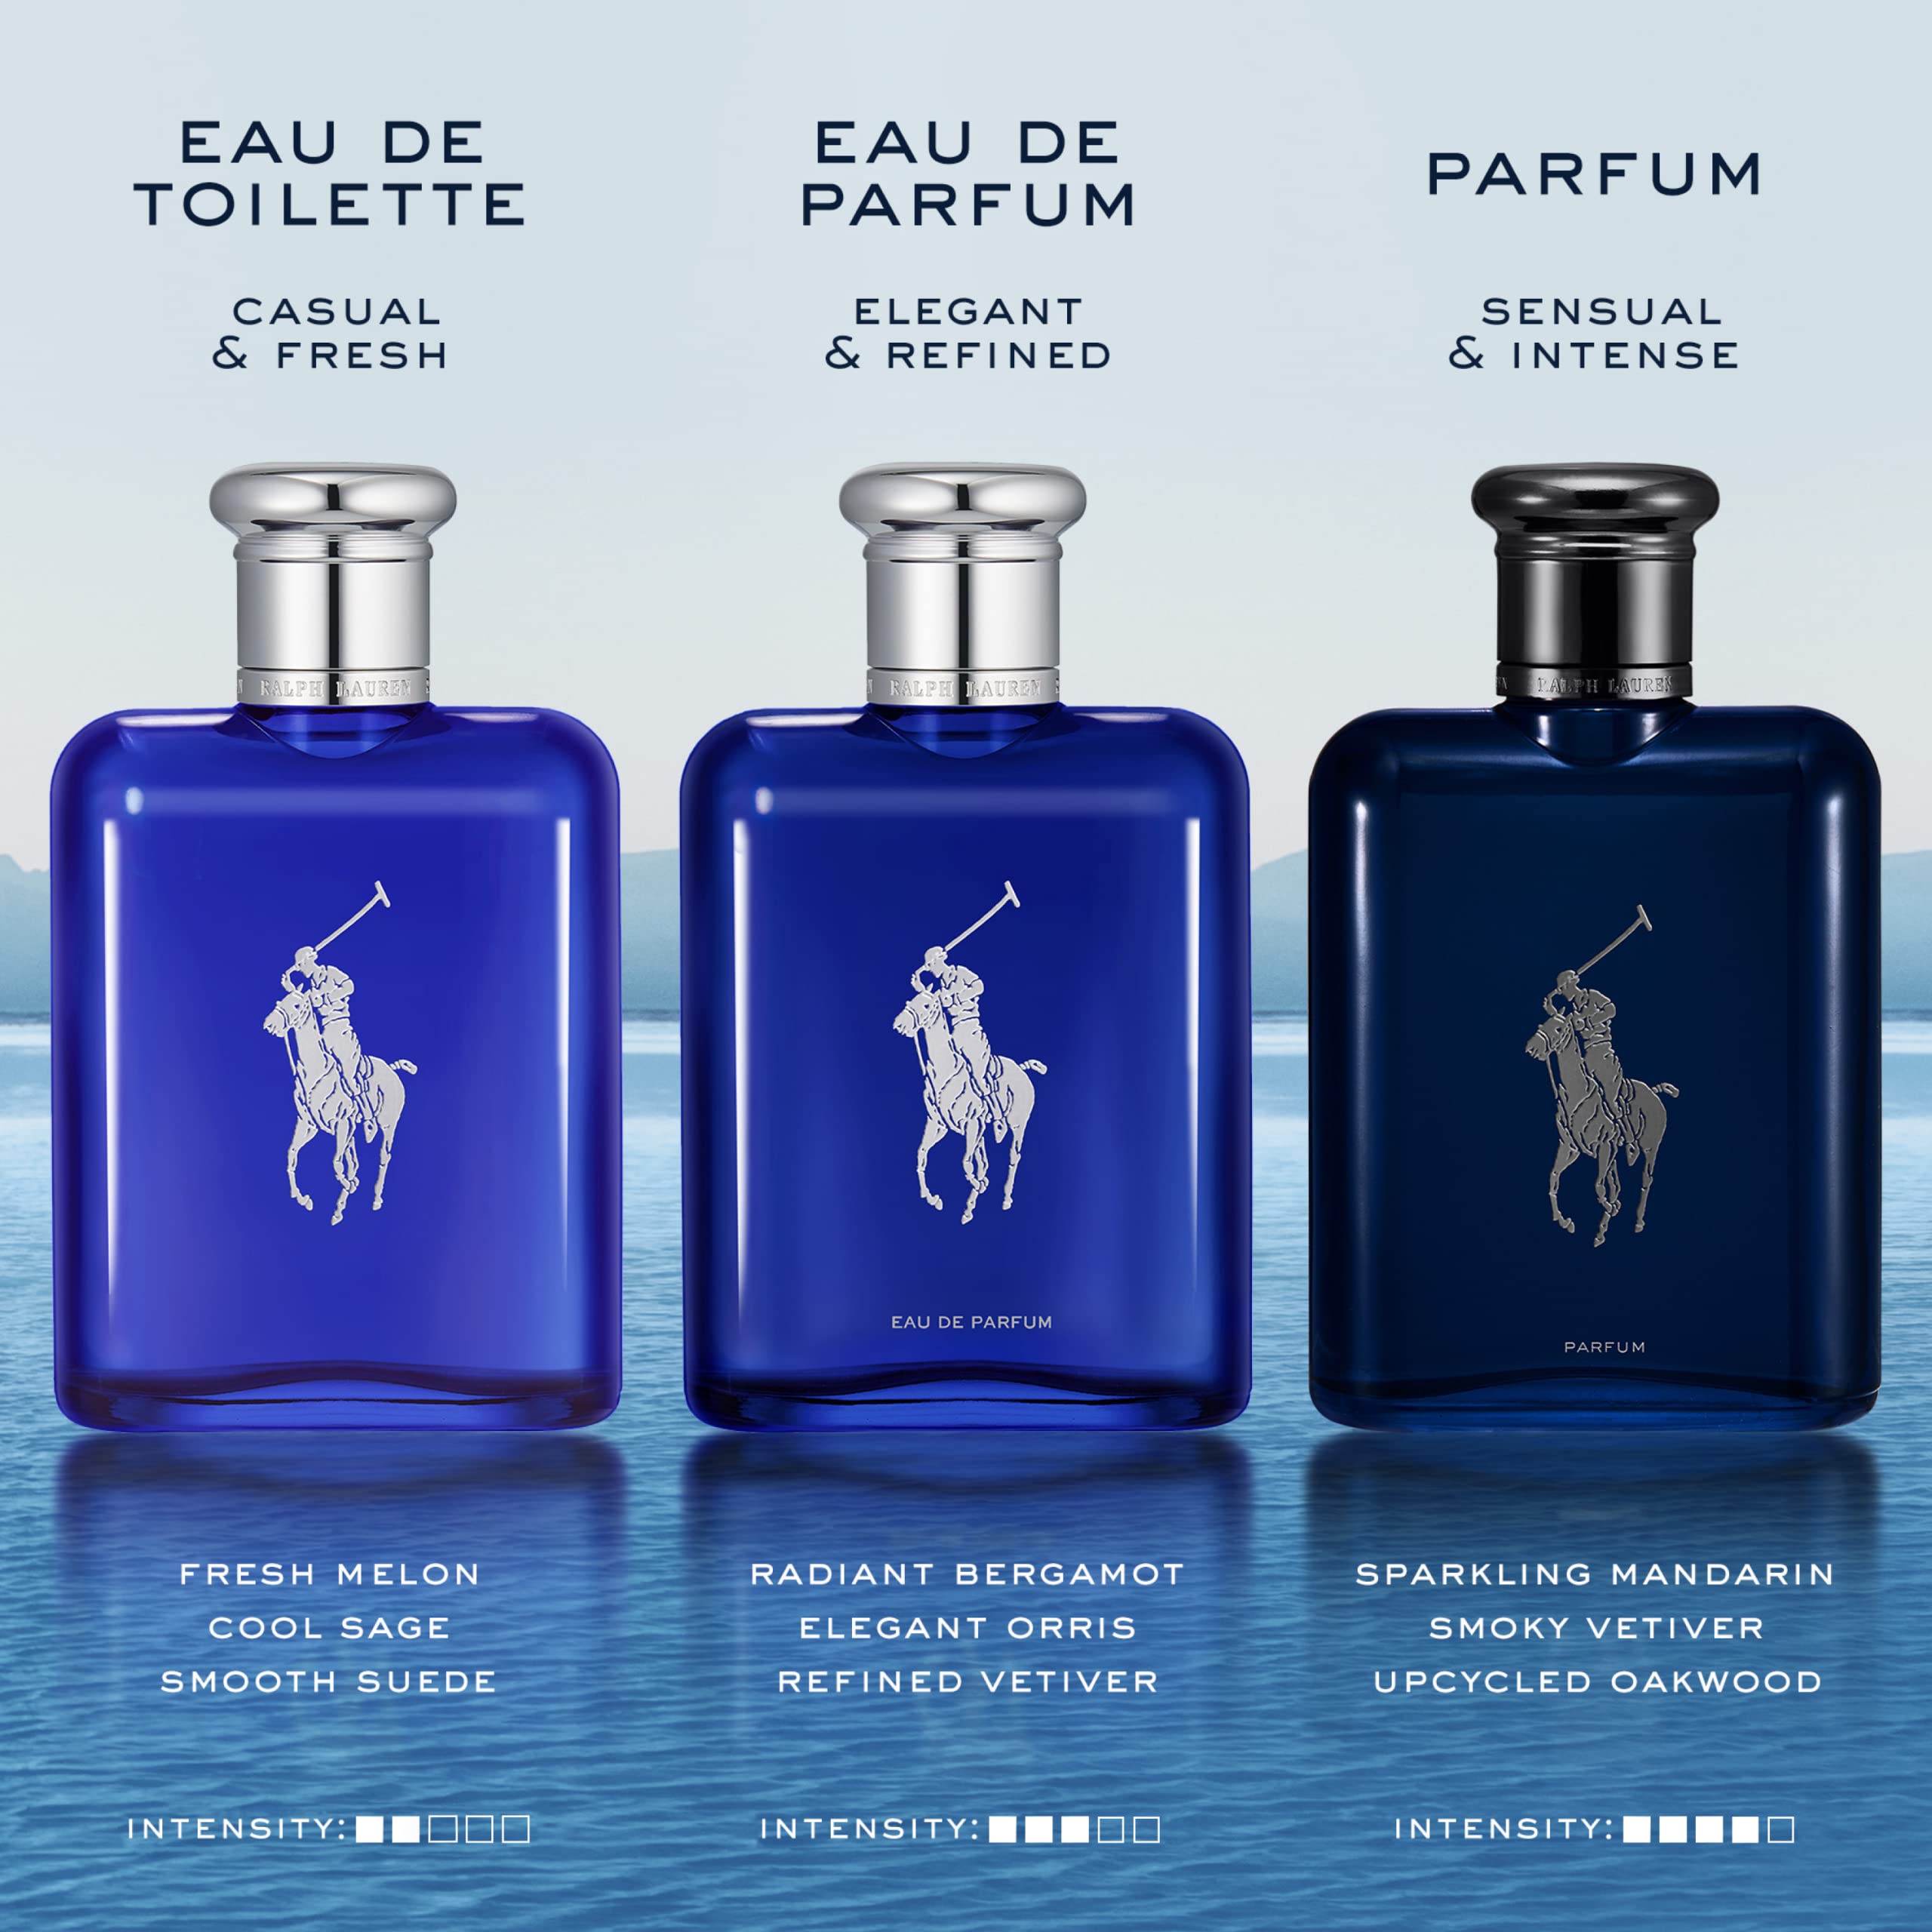 Ralph Lauren - Polo Blue - Eau de Parfum - Men's Cologne - Aquatic & Fresh - With Citrus, Bergamot, and Vetiver - Medium Intensity